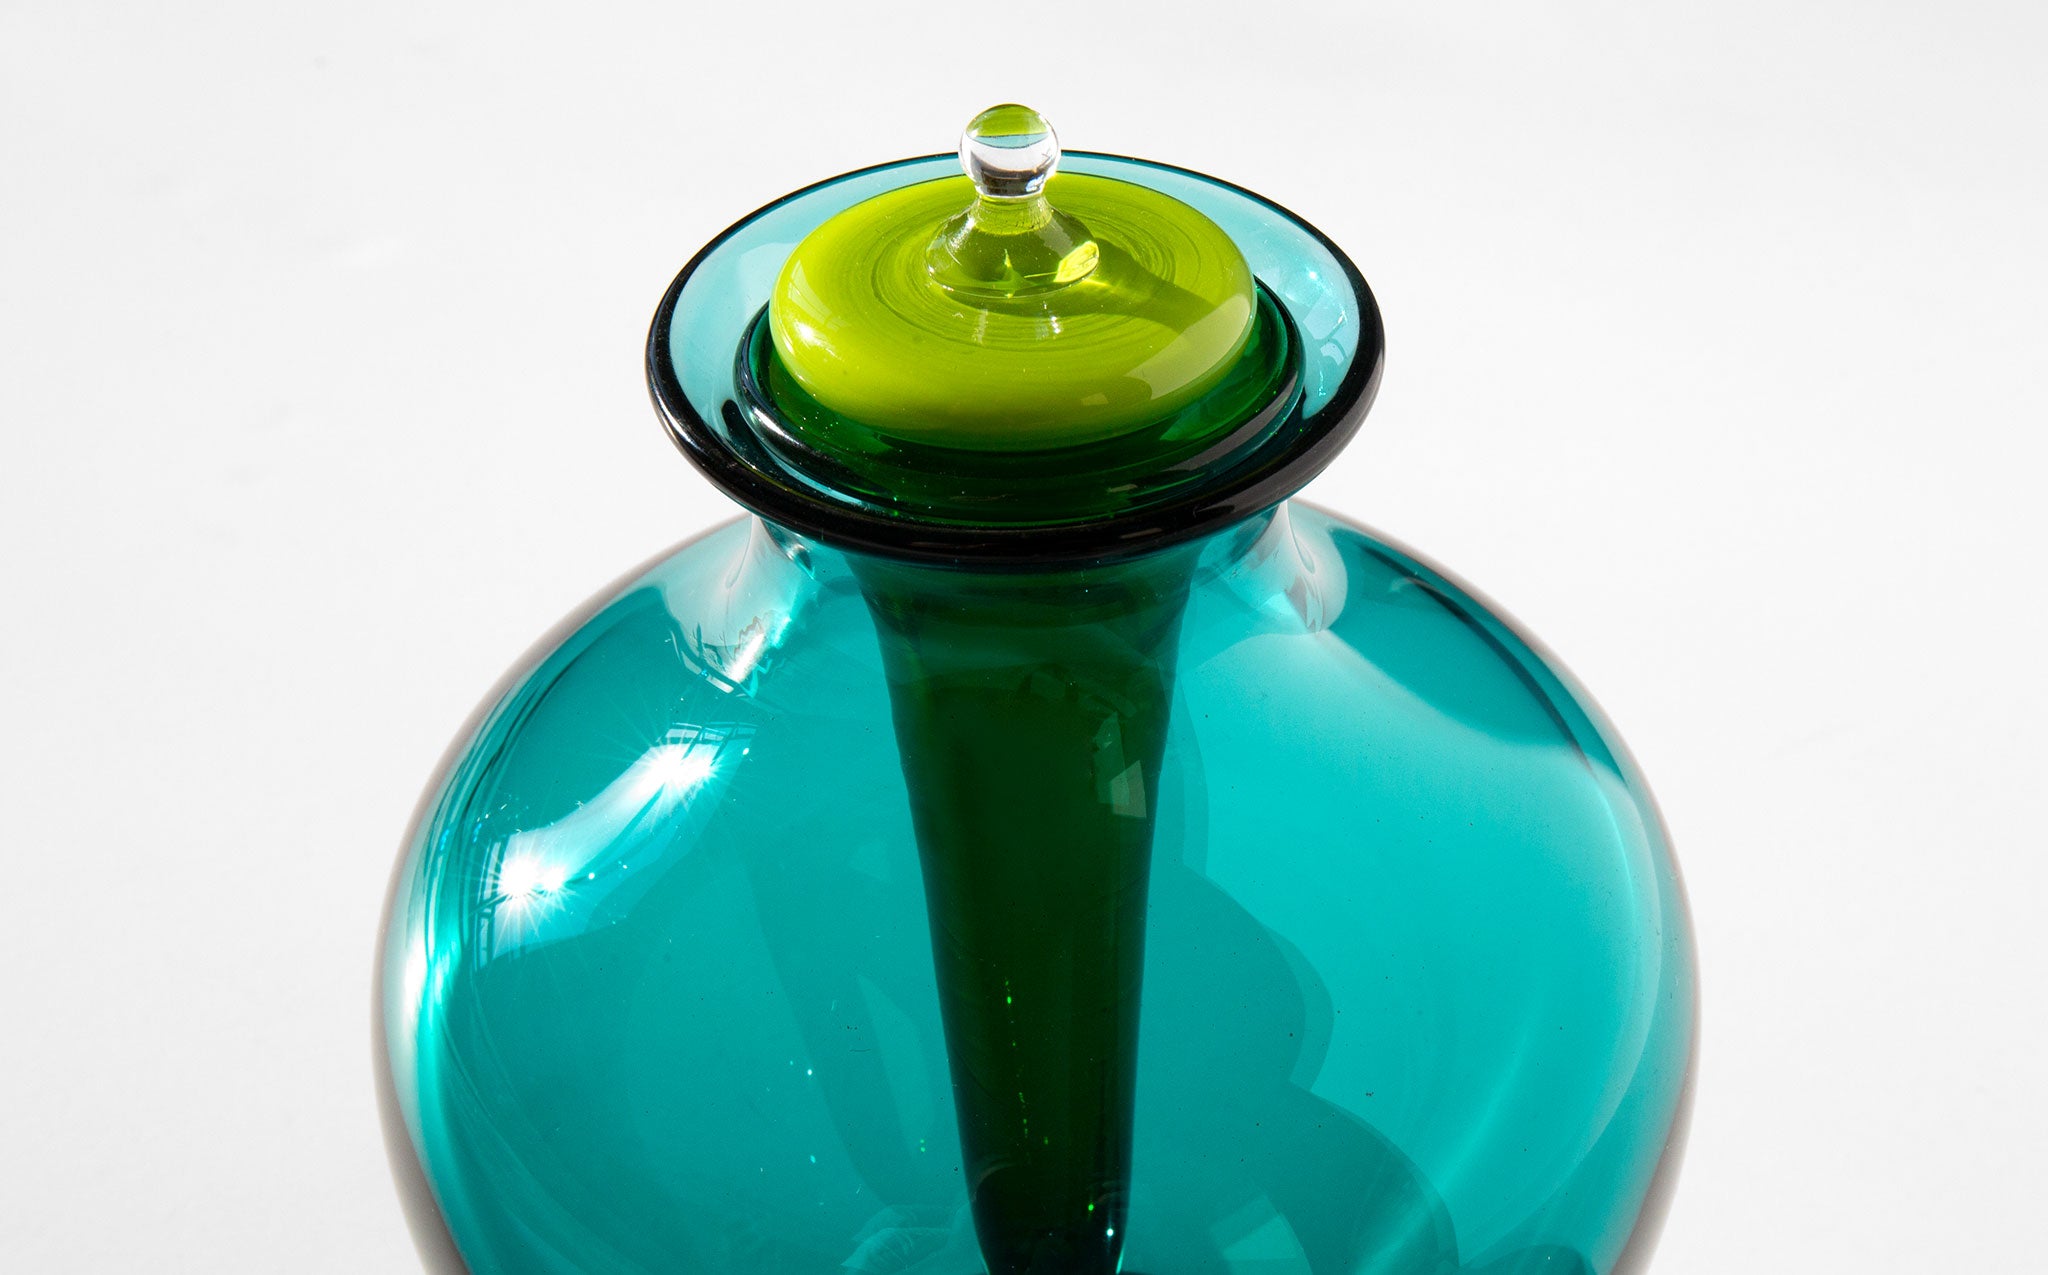 Curio Vessel in Green